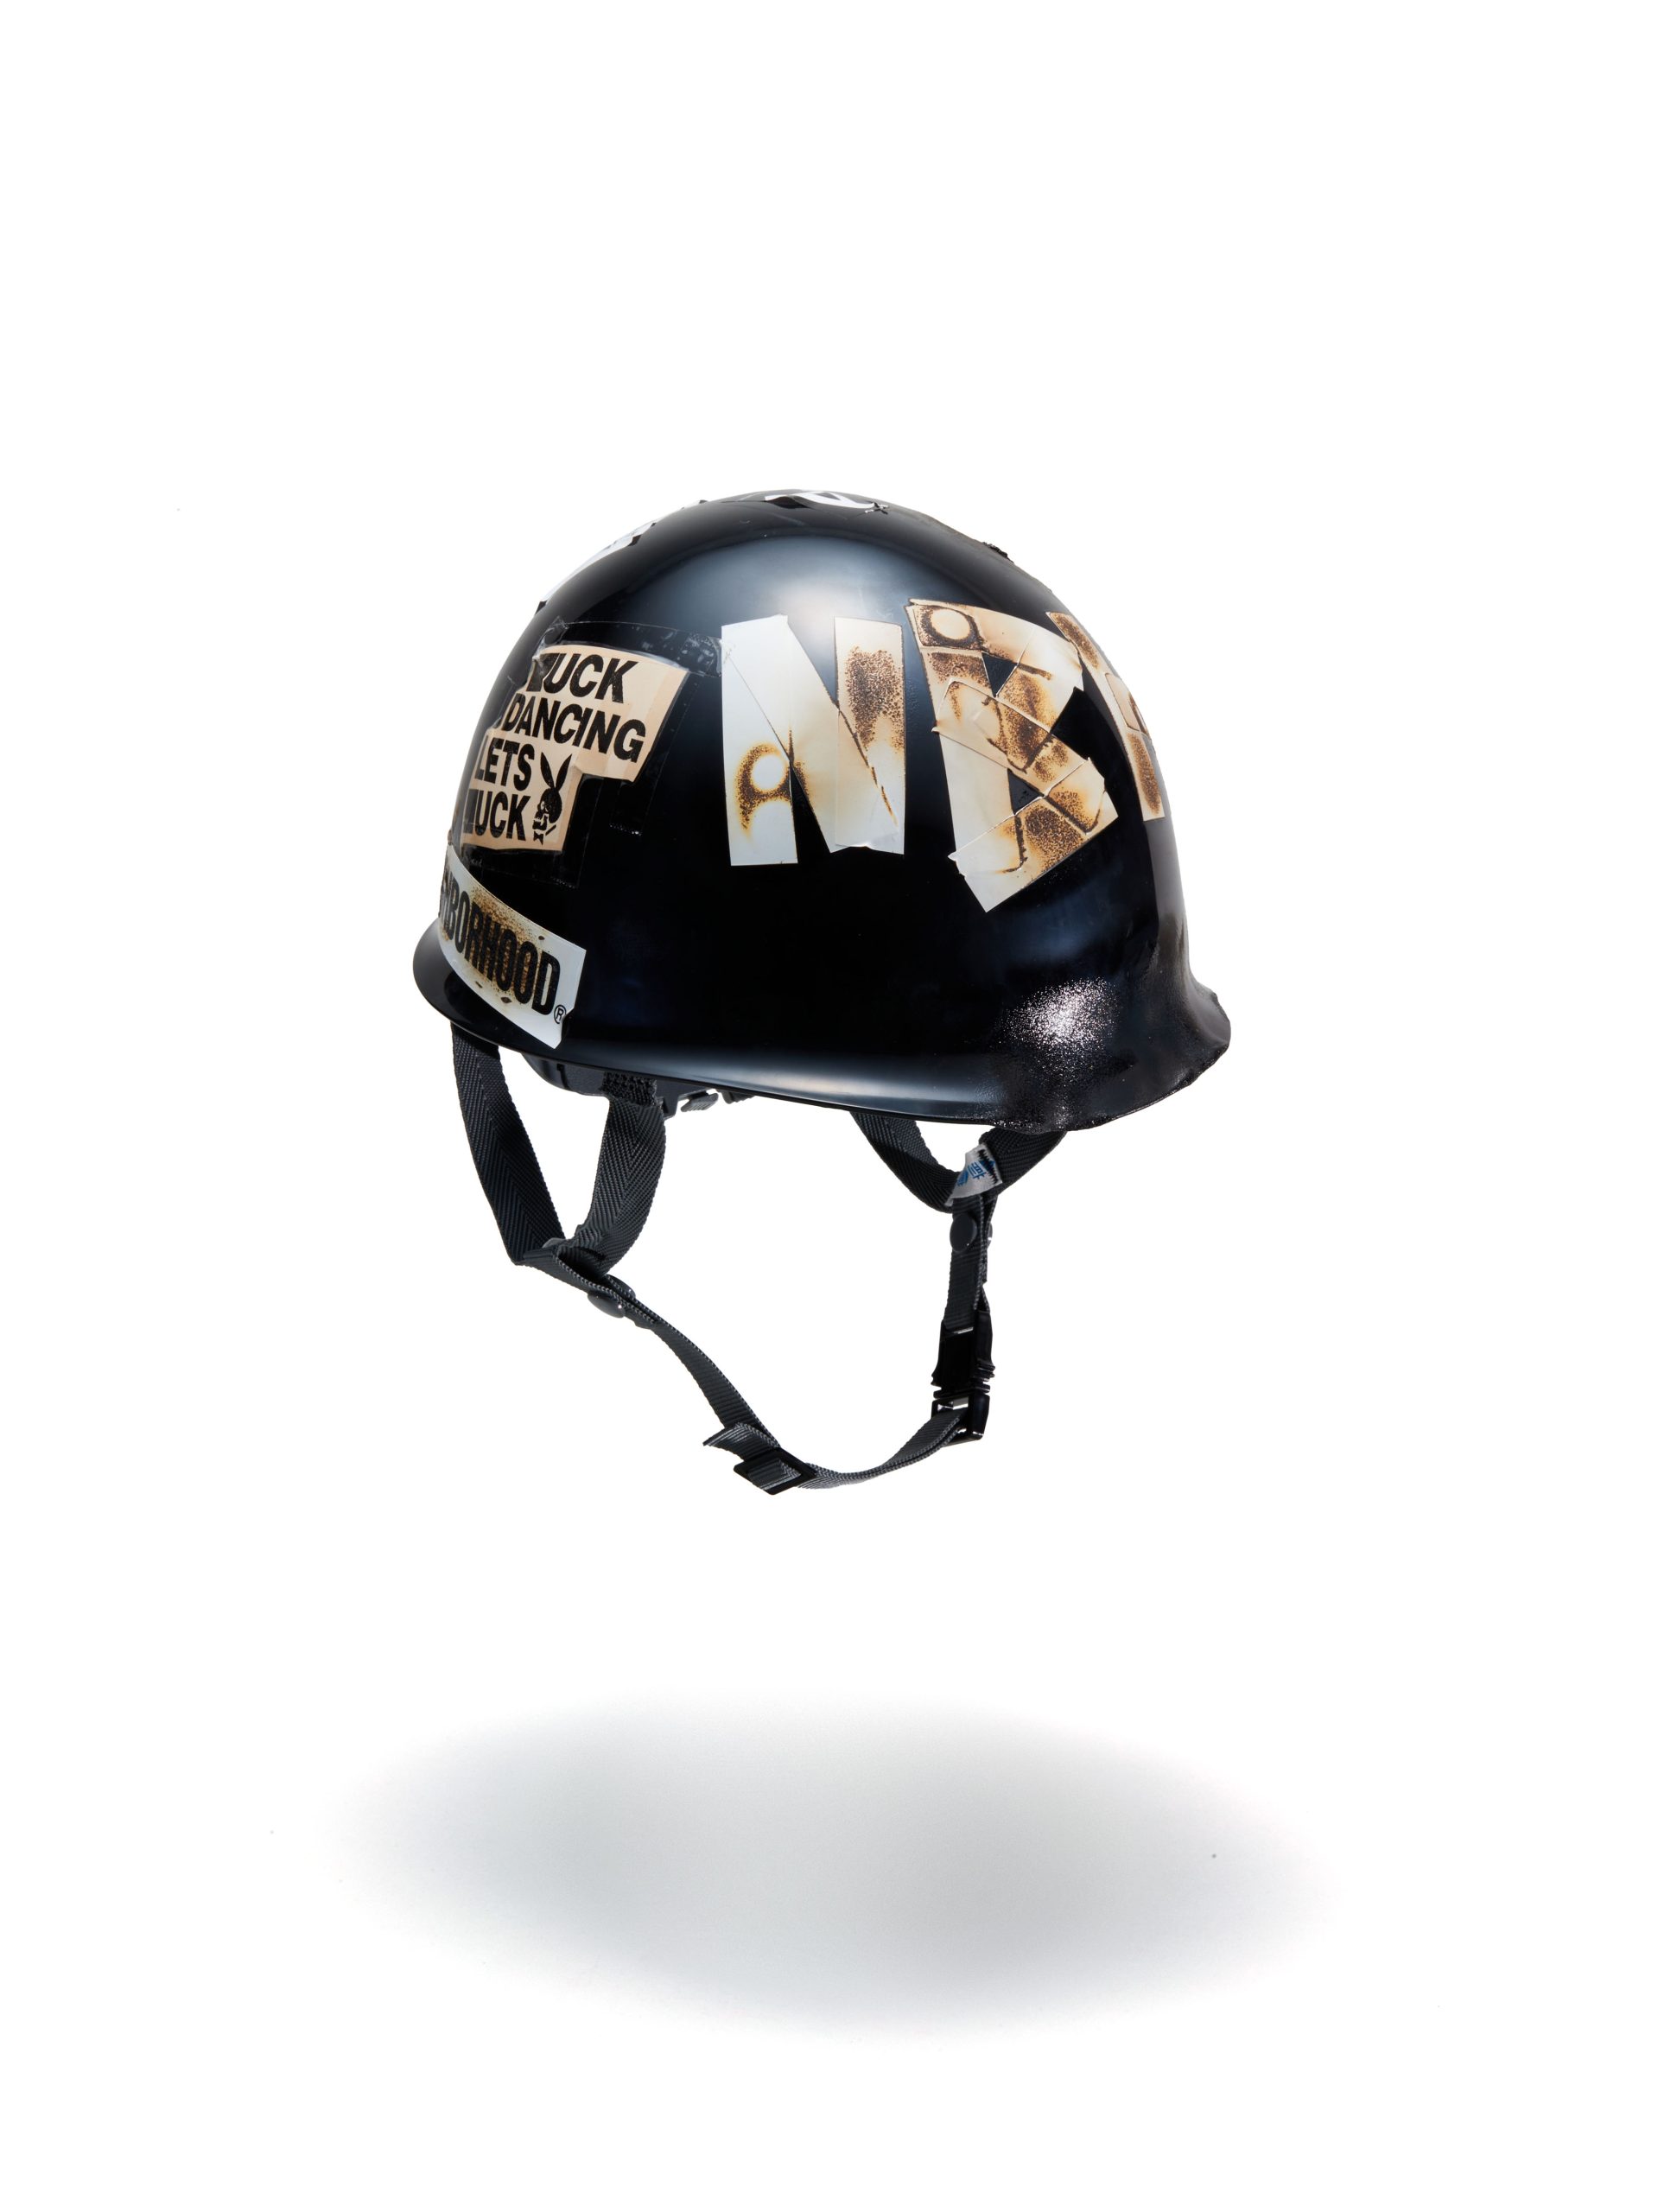 今回のコラボレーションでは、JUN INAGAWAがカスタムを手掛けた「ネイバーフッド」のヘルメットも10個限定で販売される